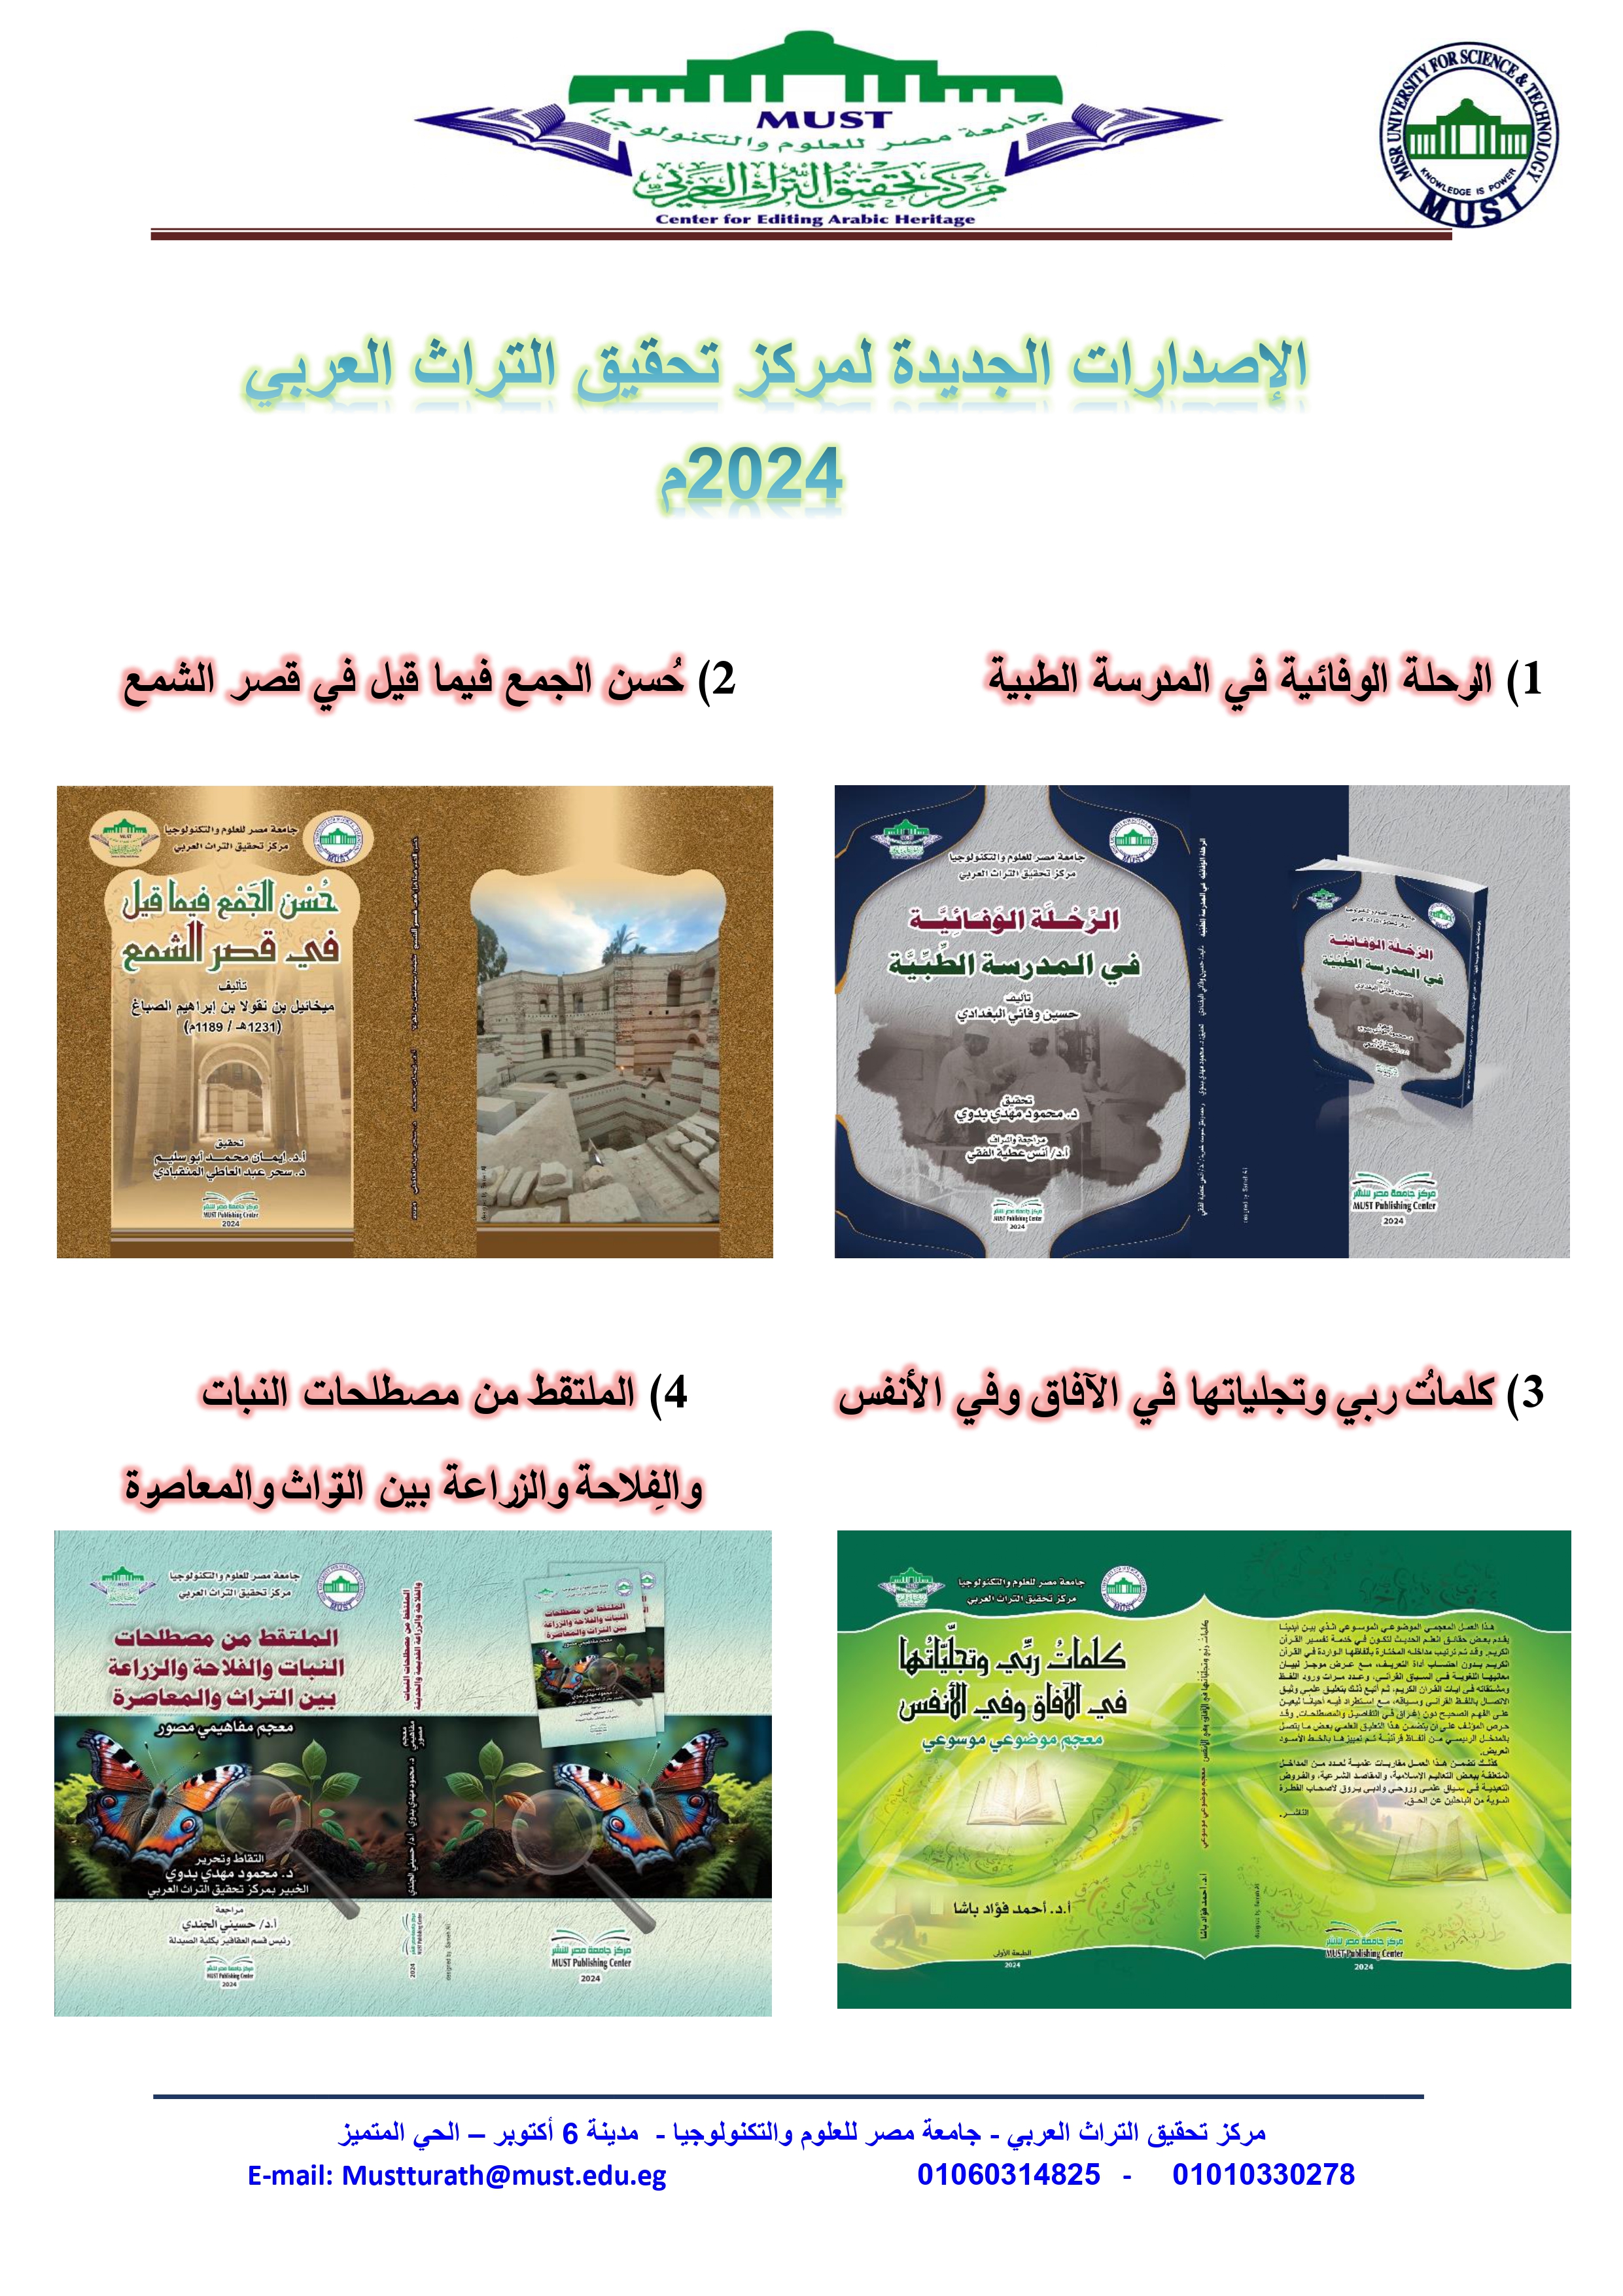 مركز التراث العربي بجامعة مصر يضيف للمكتبة العربية 4 إصدارات جديدة